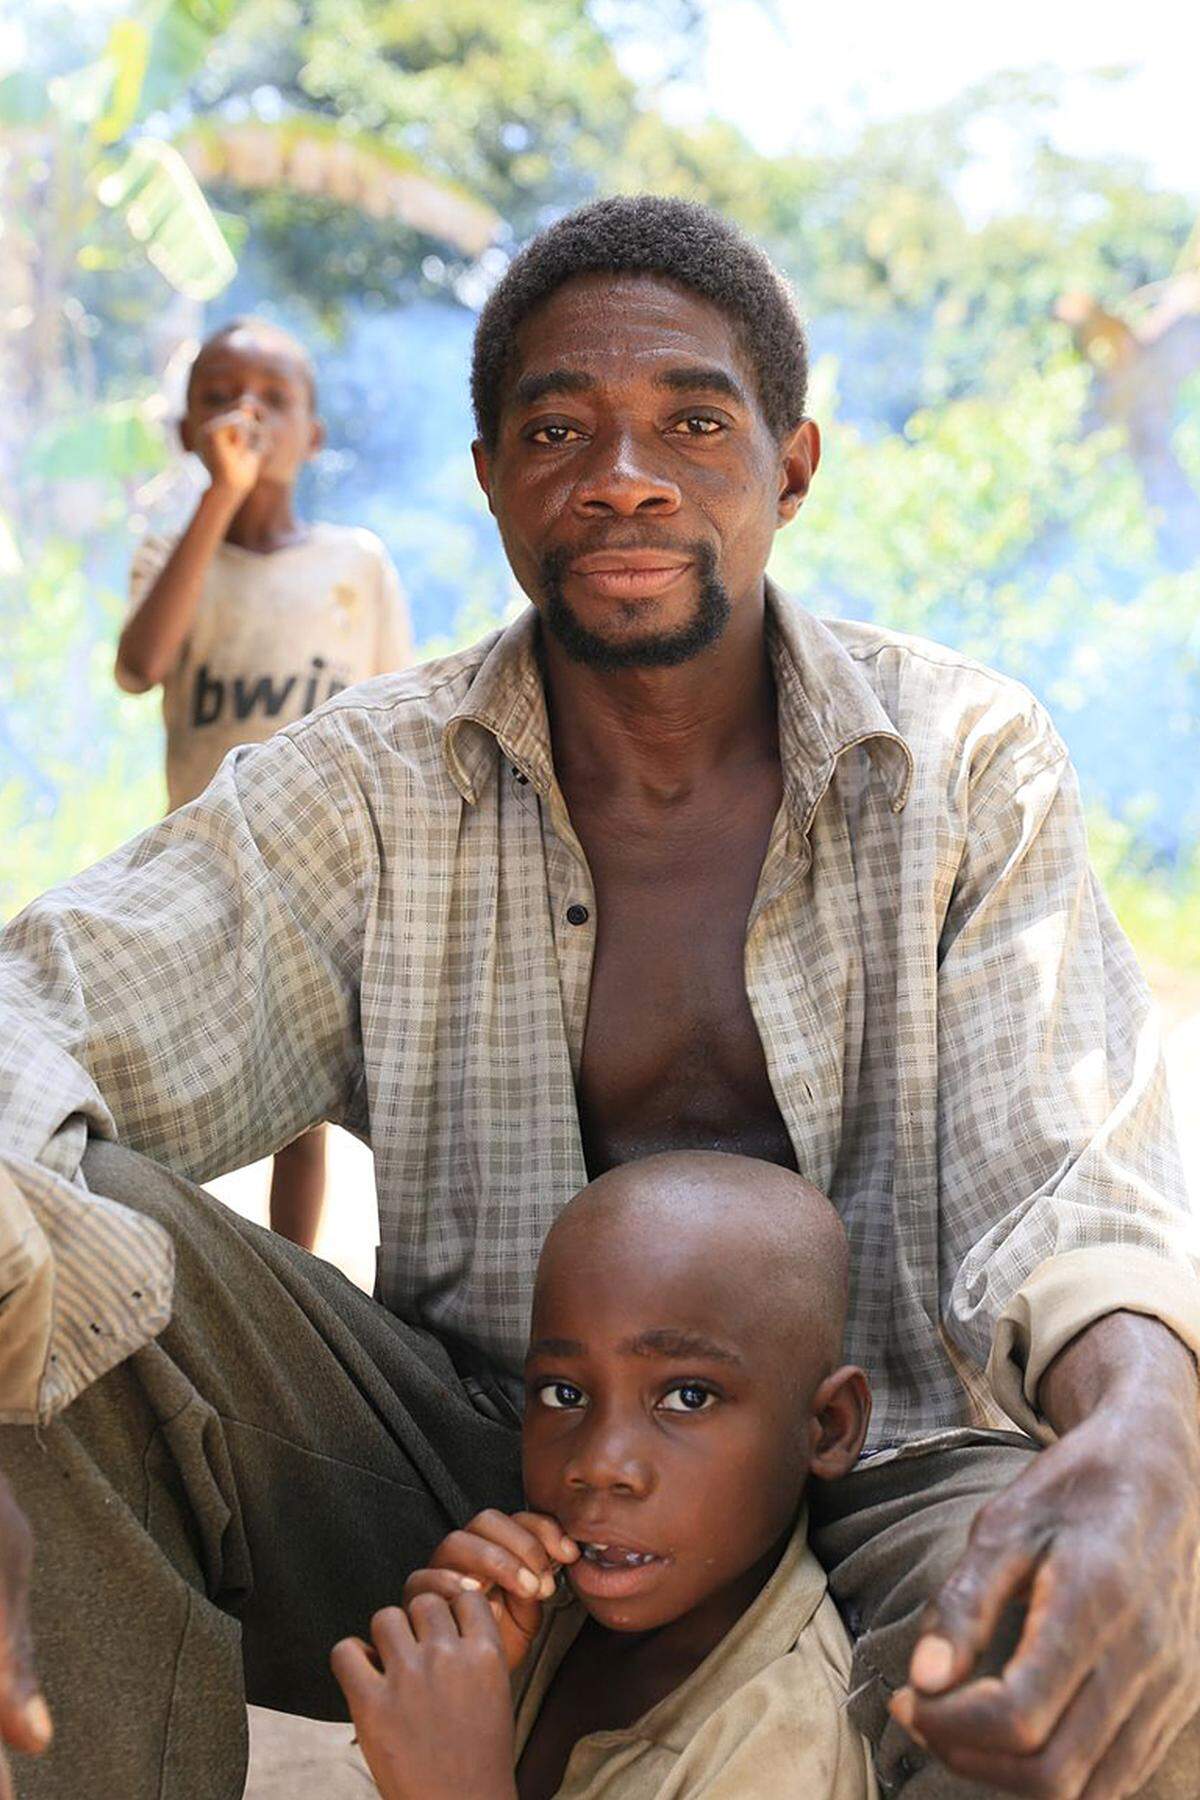 Mongemba und sein Sohn Indongo gehören zum Volk der Ba'Aka "Pygmäen". Bei den Ba'Aka, die in der Demokratischen Republik Kongo (DRC) und in der Zentralafrikanischen Republik leben, verbringen die Väter ungefähr den halben Tag mit ihren Babys.